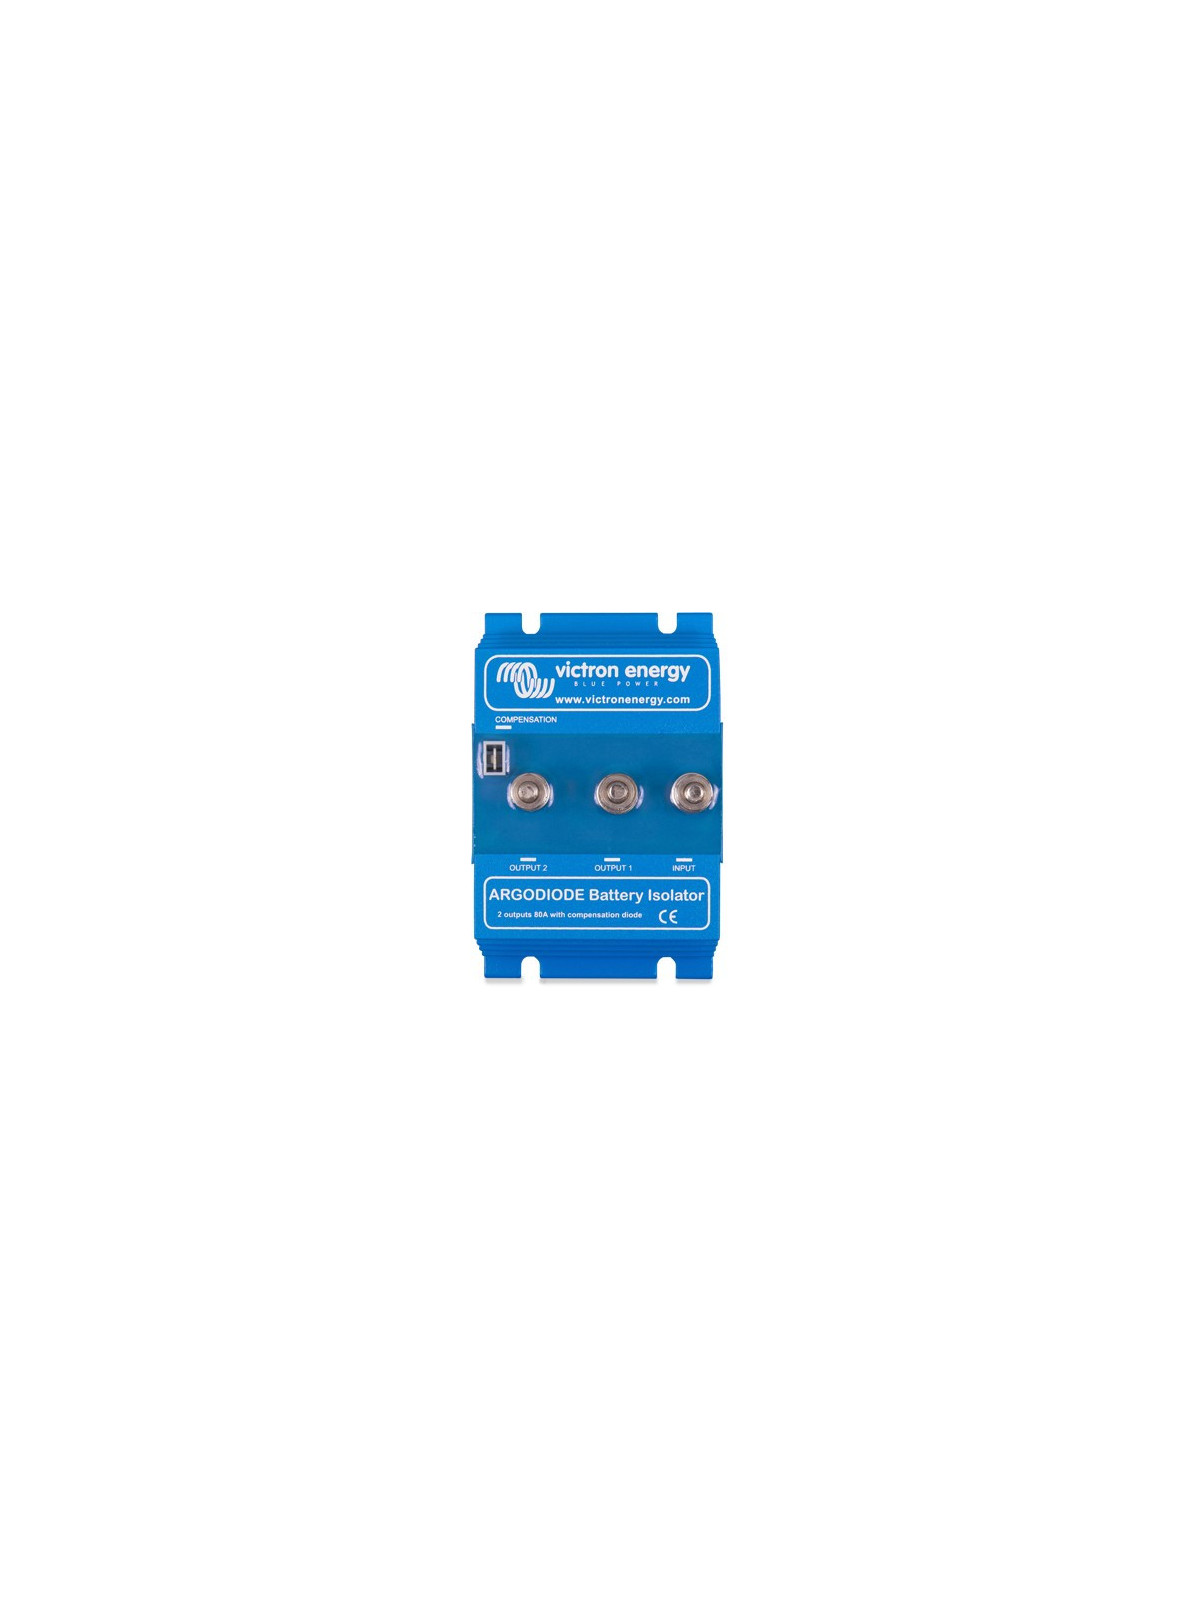 Dioden-Batterieverteiler ARGO Victron